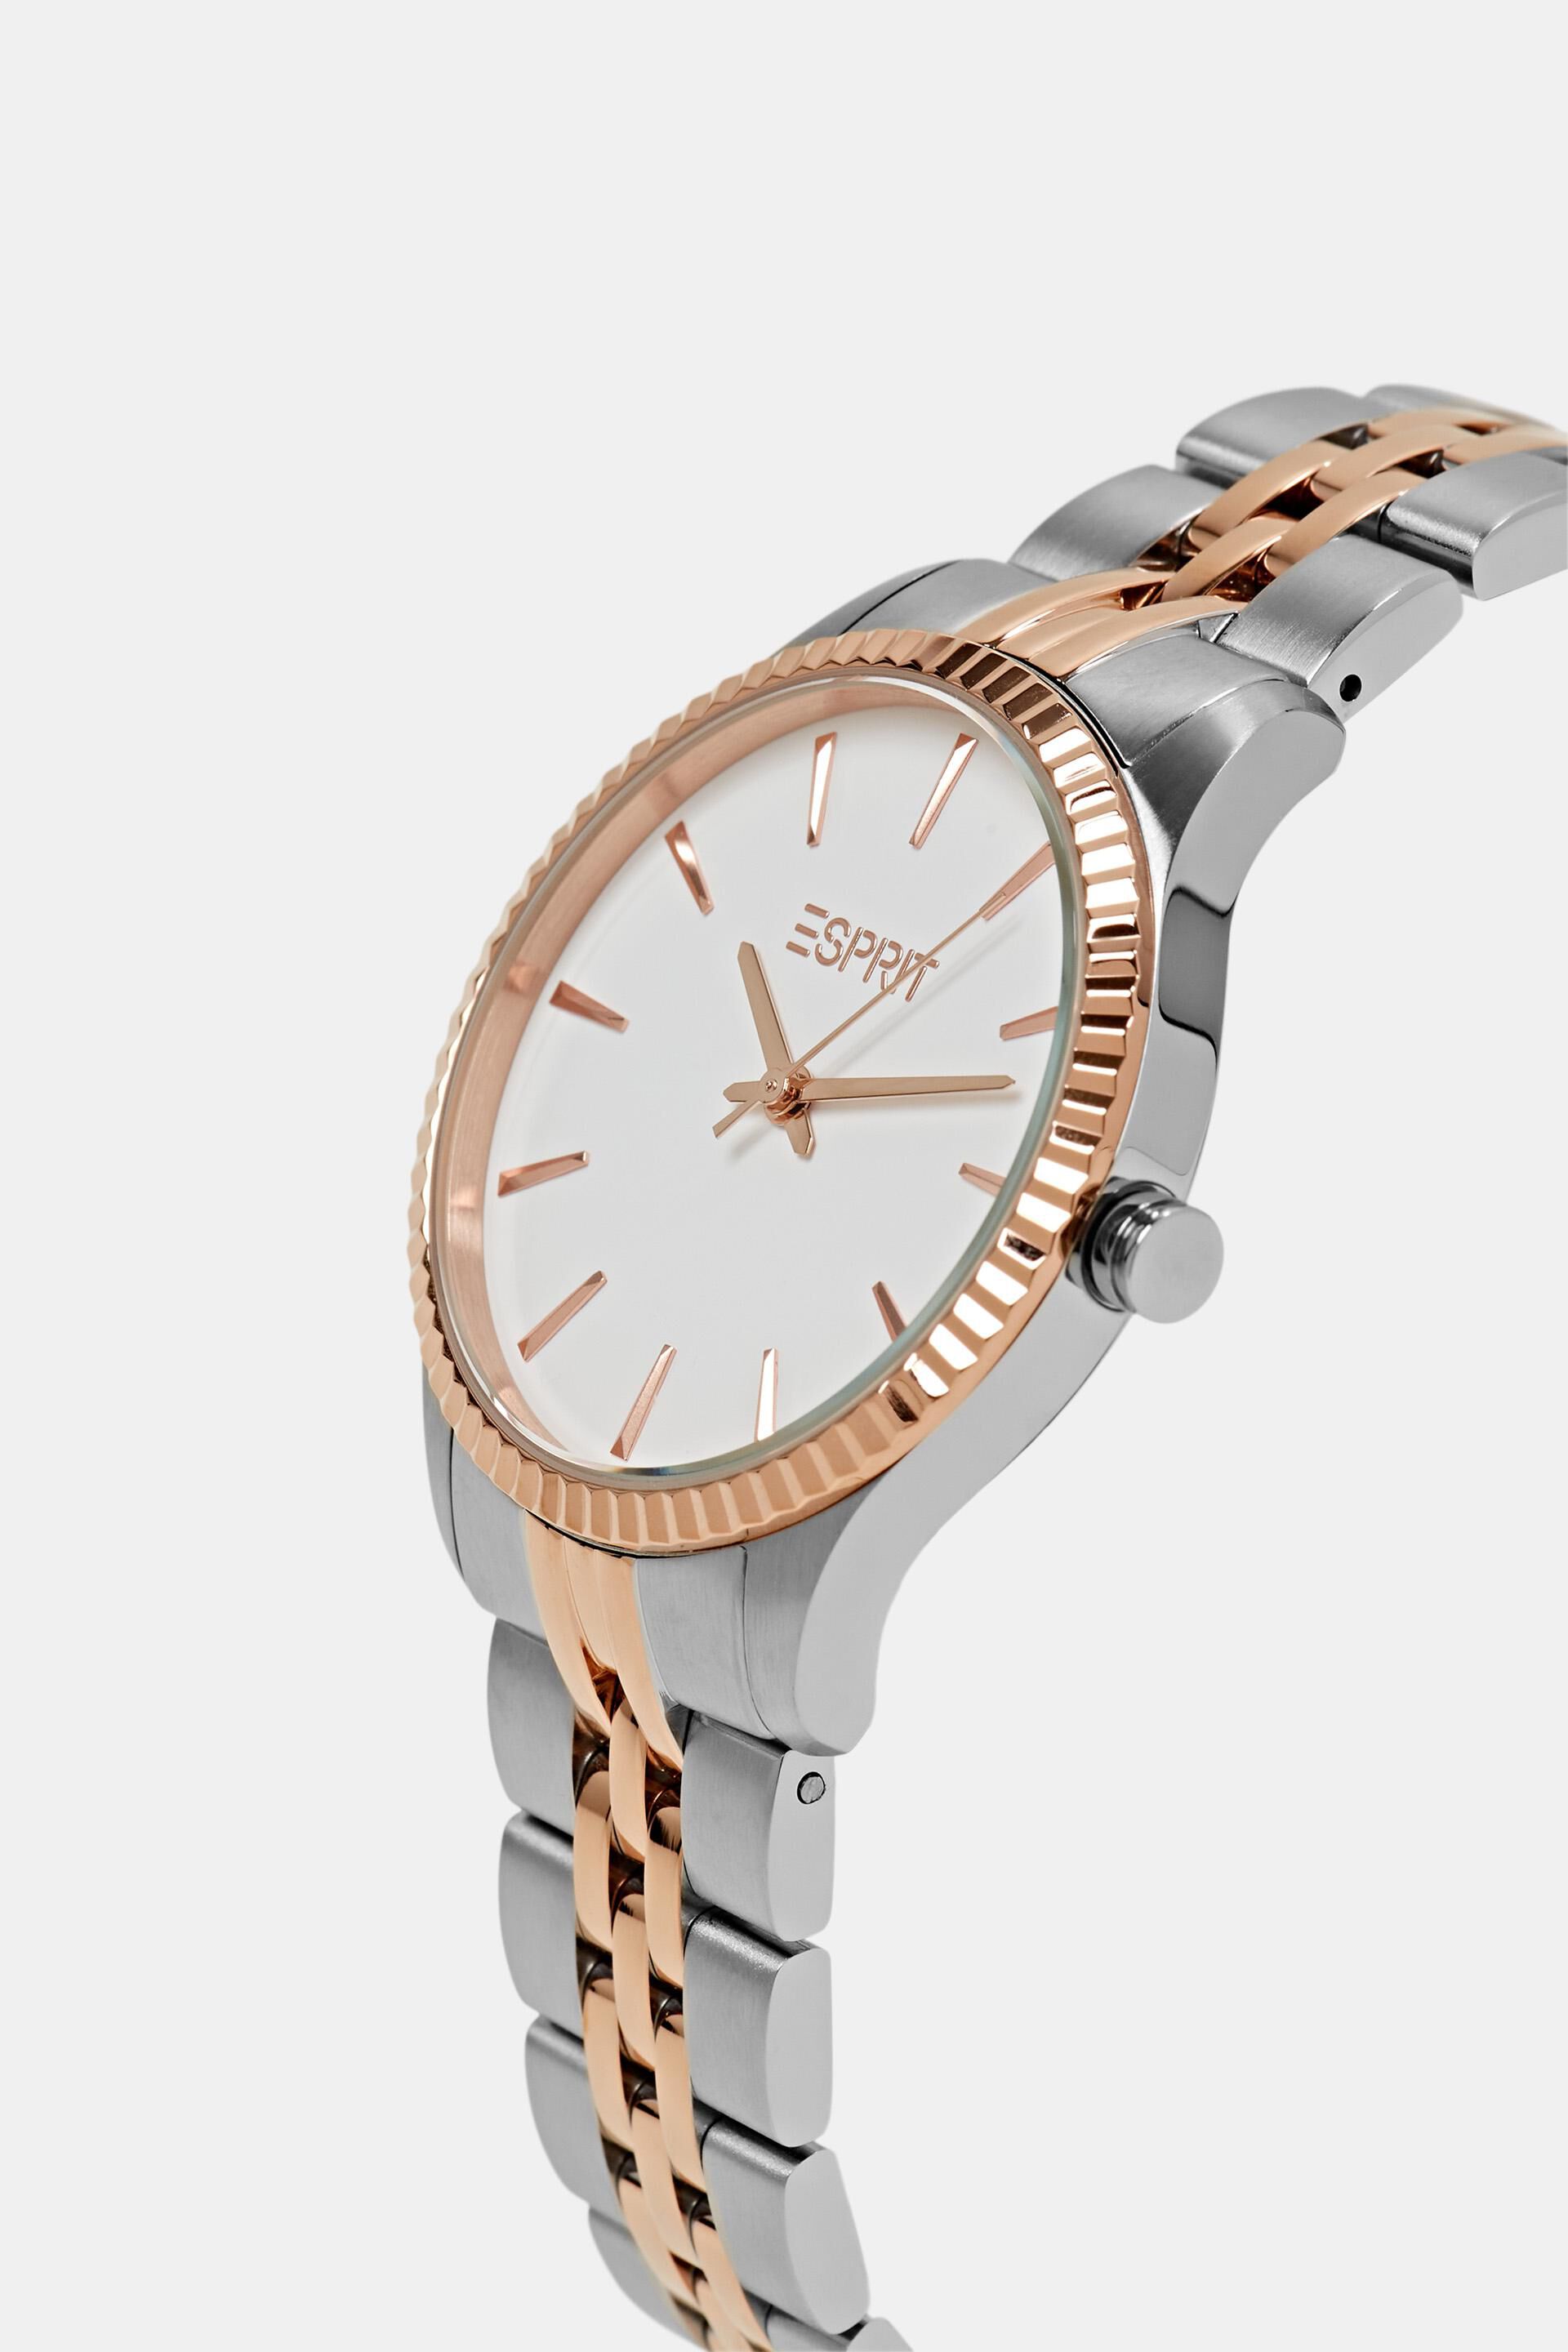 Esprit Online Store Zweifarbige Uhr mit gewellter Lünette